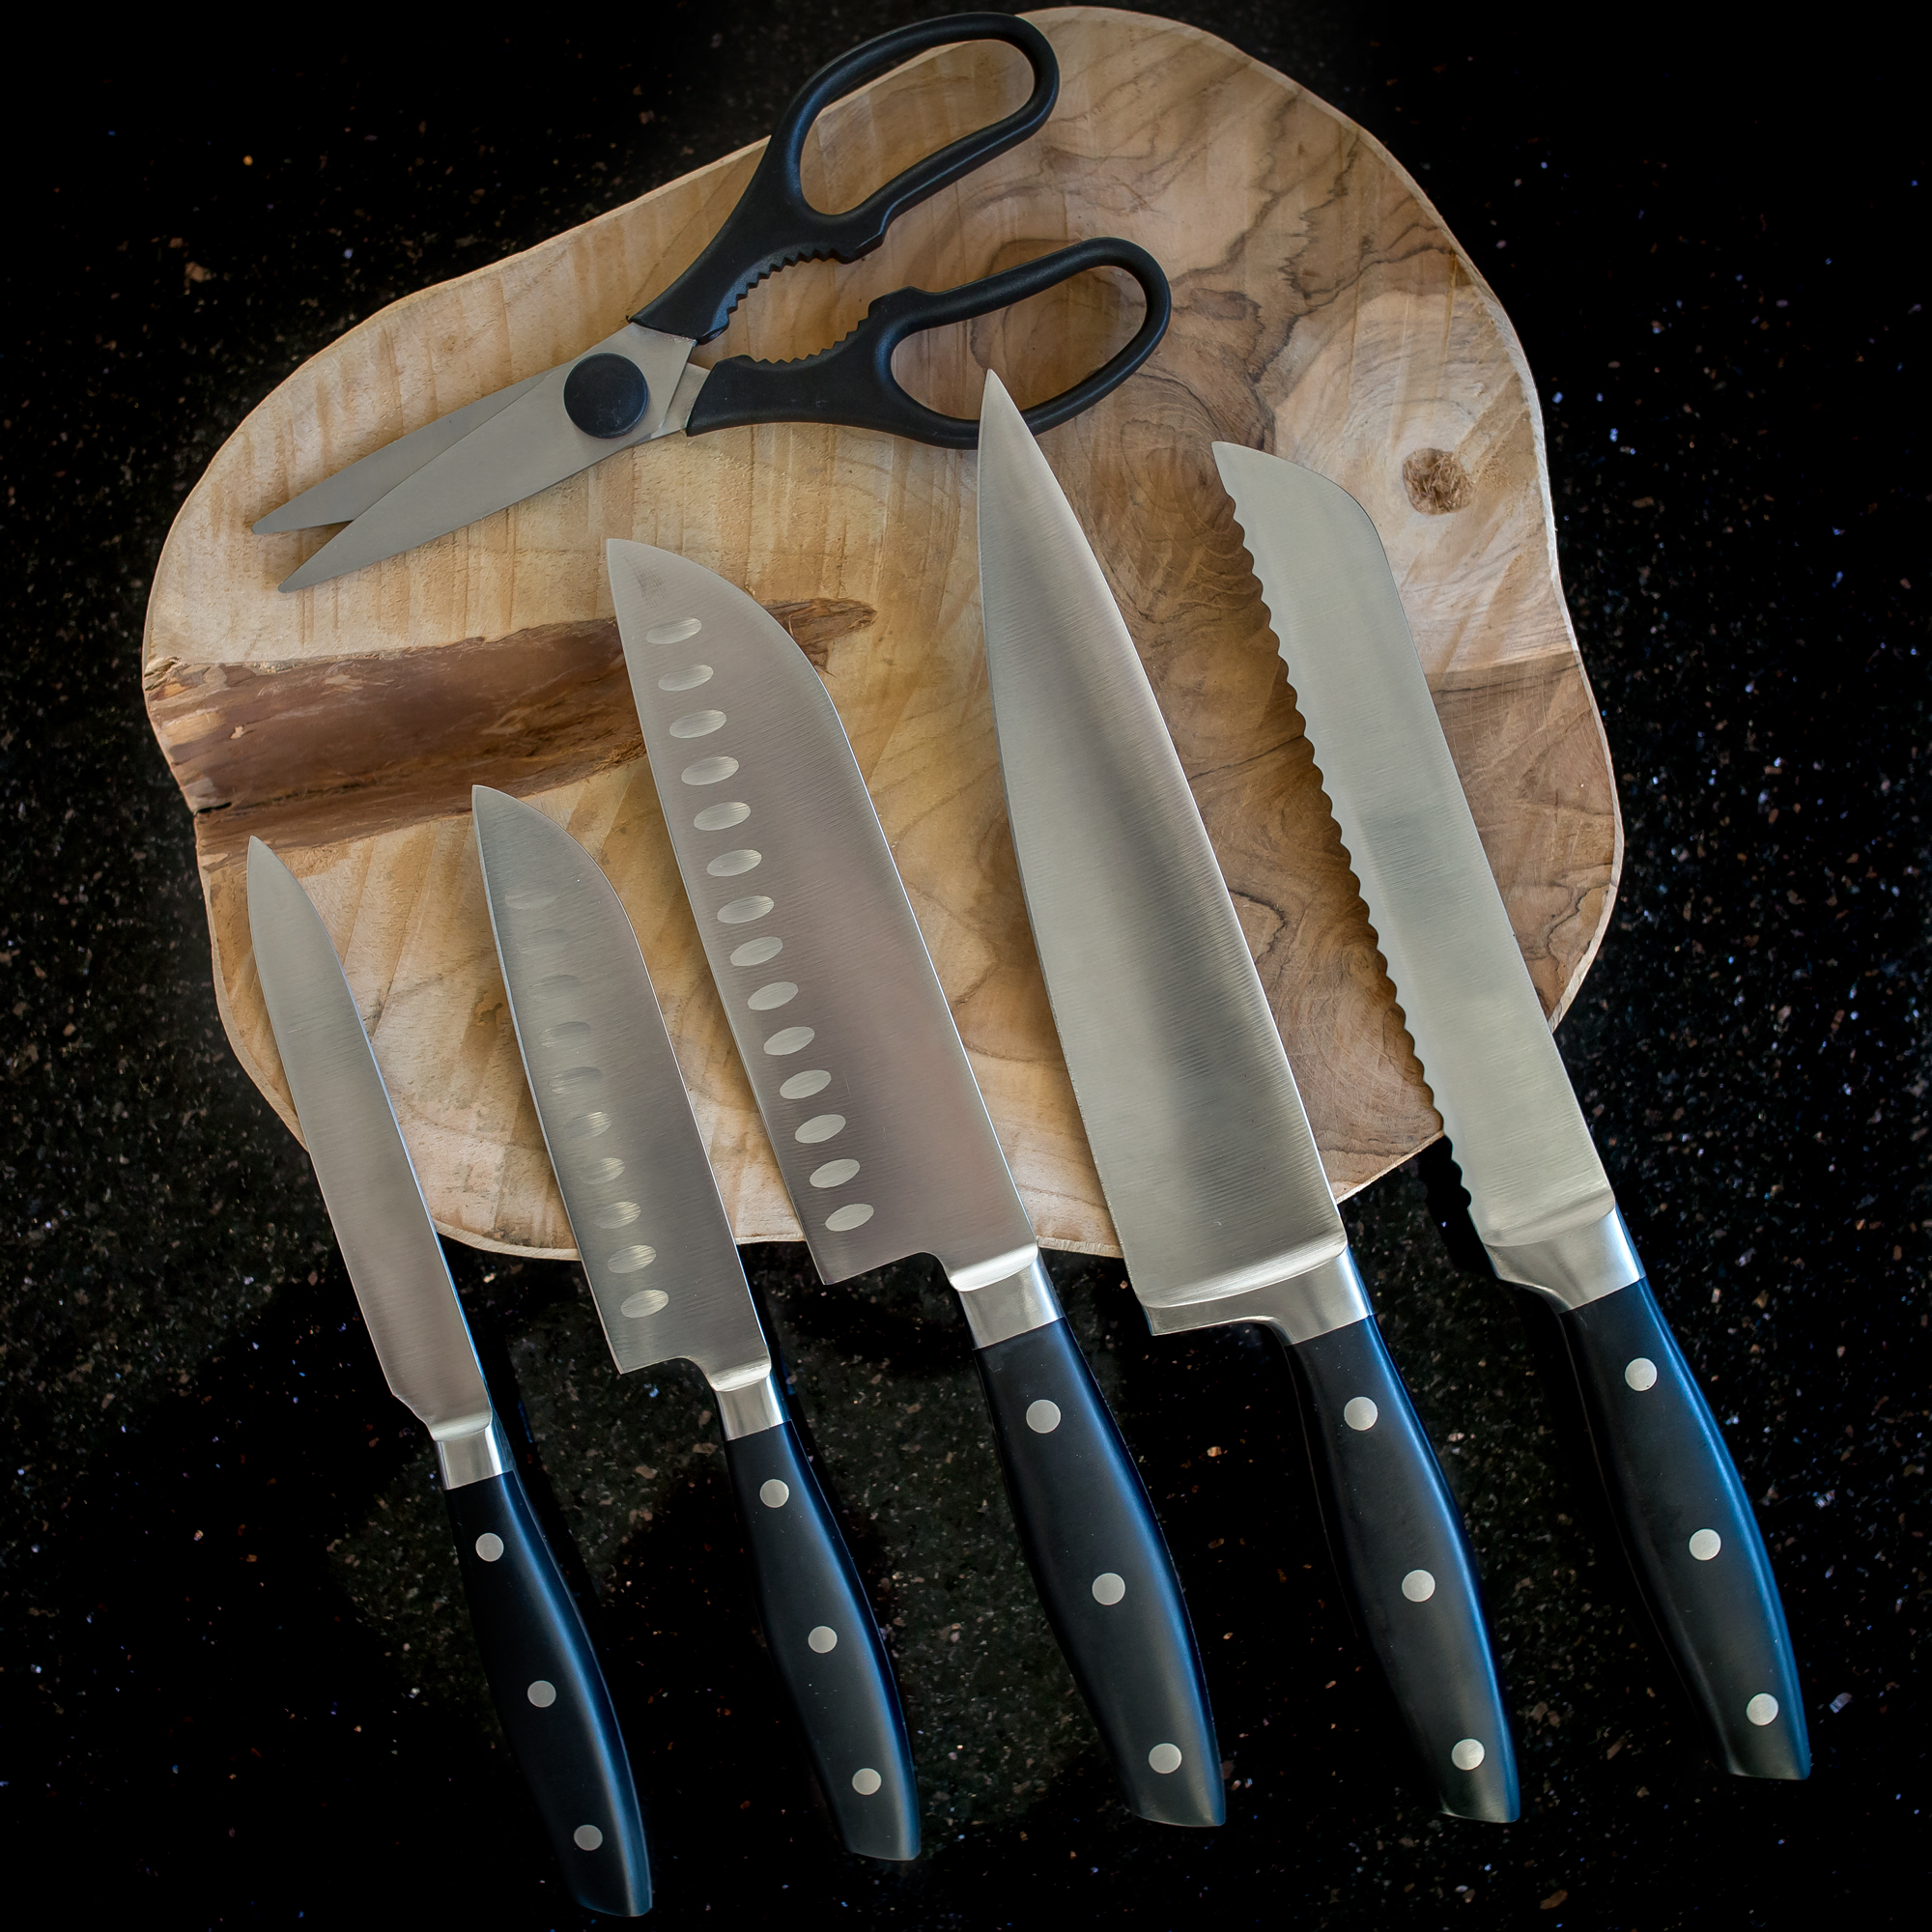 Couteau de cuisine Santoku Pro Series 16,5 cm FISSLER